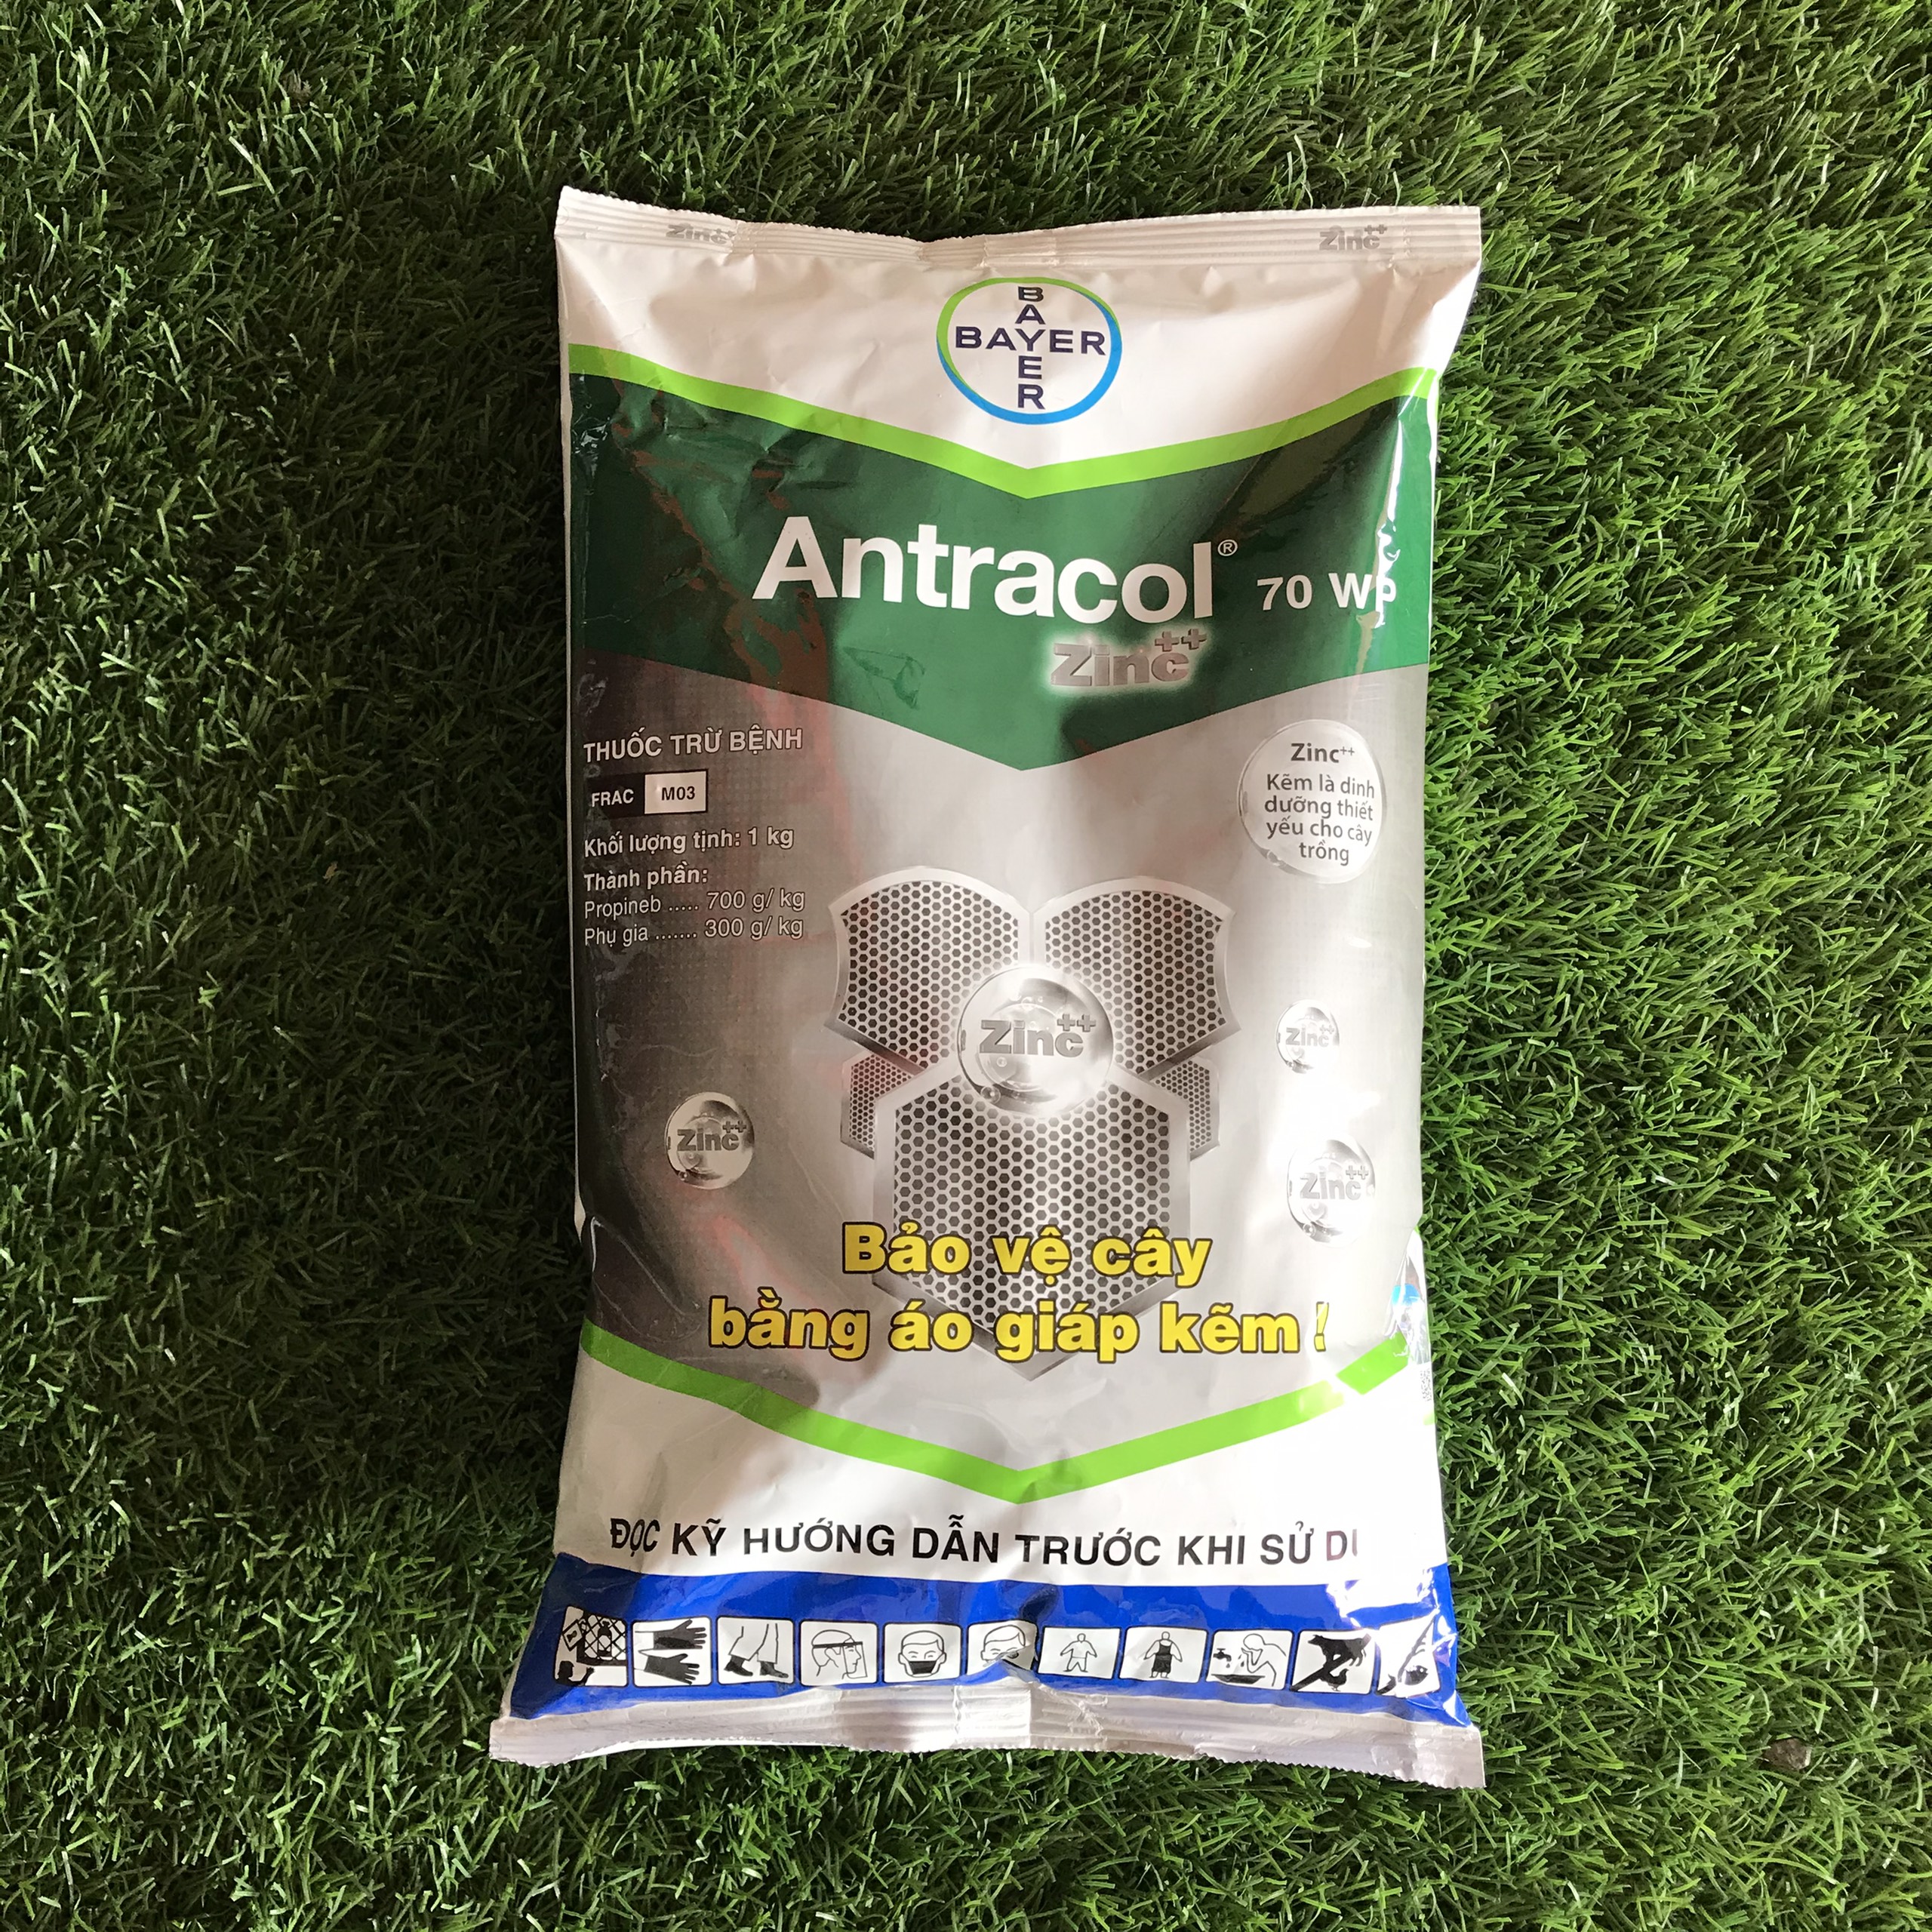 Thuốc trừ bệnh Antracol 70WP - Gói 1kg